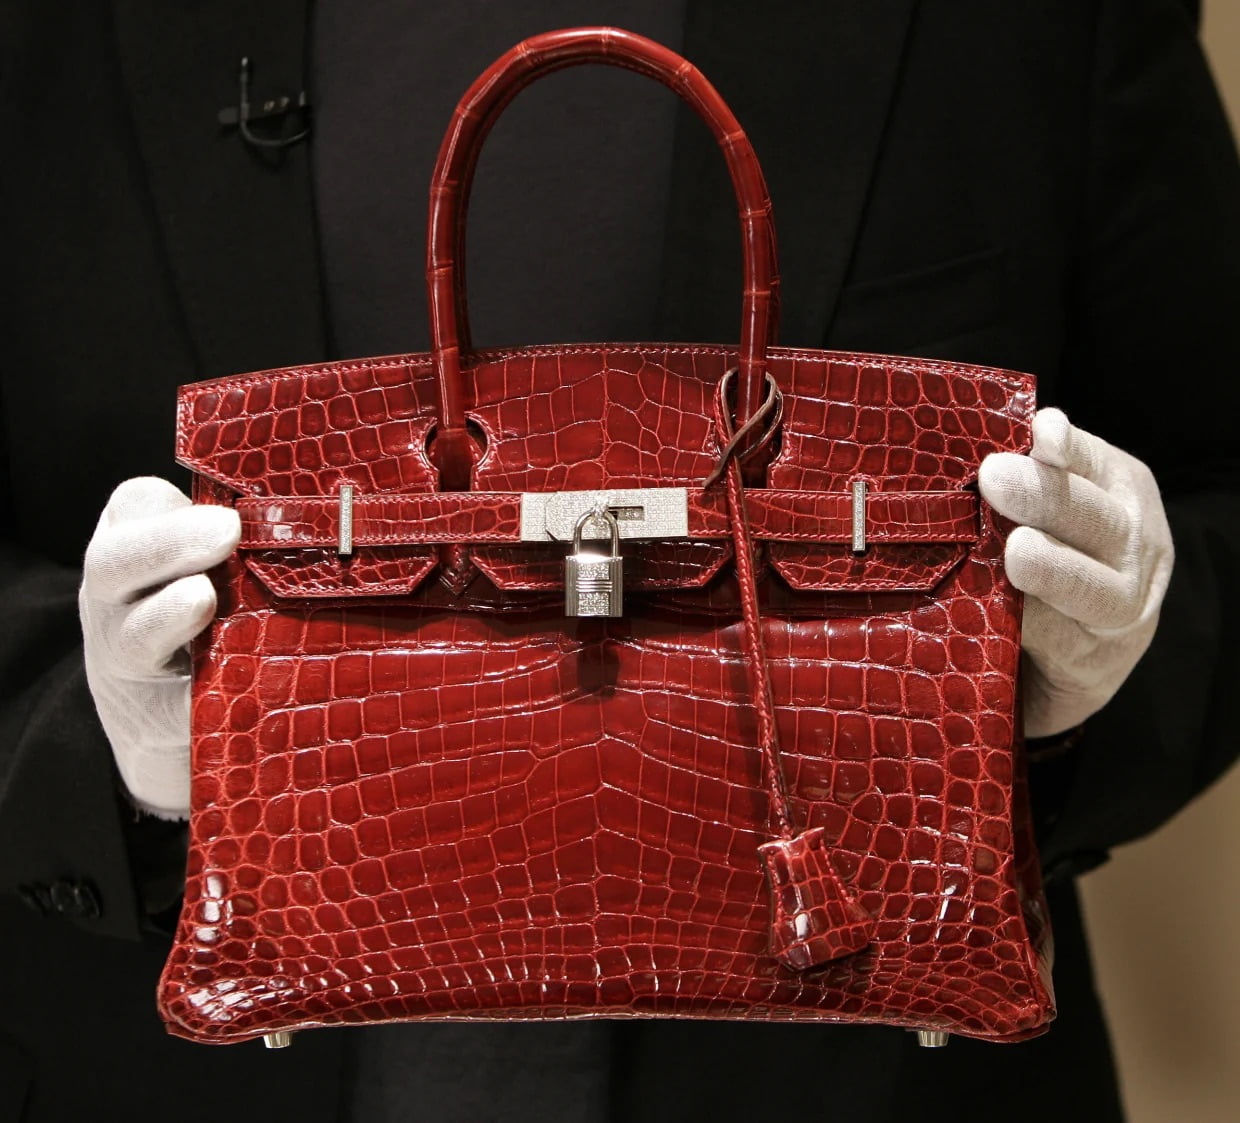 История сумки Birkin от Hermès - Интернет-магазин кожаных изделий "Верфь"